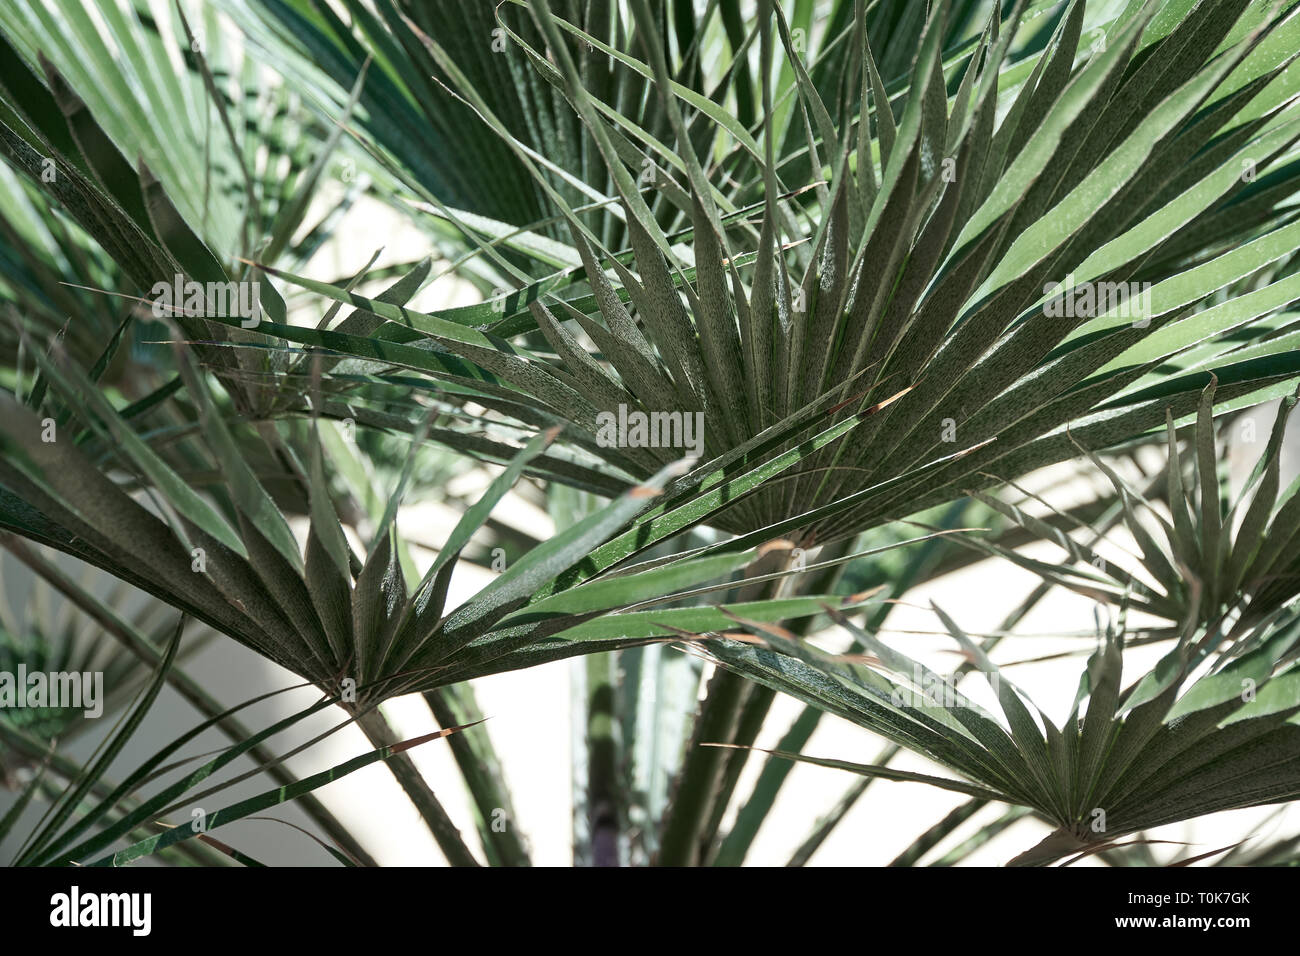 Schönen tropischen Blatt Textur, grünes Laub Natur Hintergrund des grünen Grases und exotische Blätter Garten Stockfoto